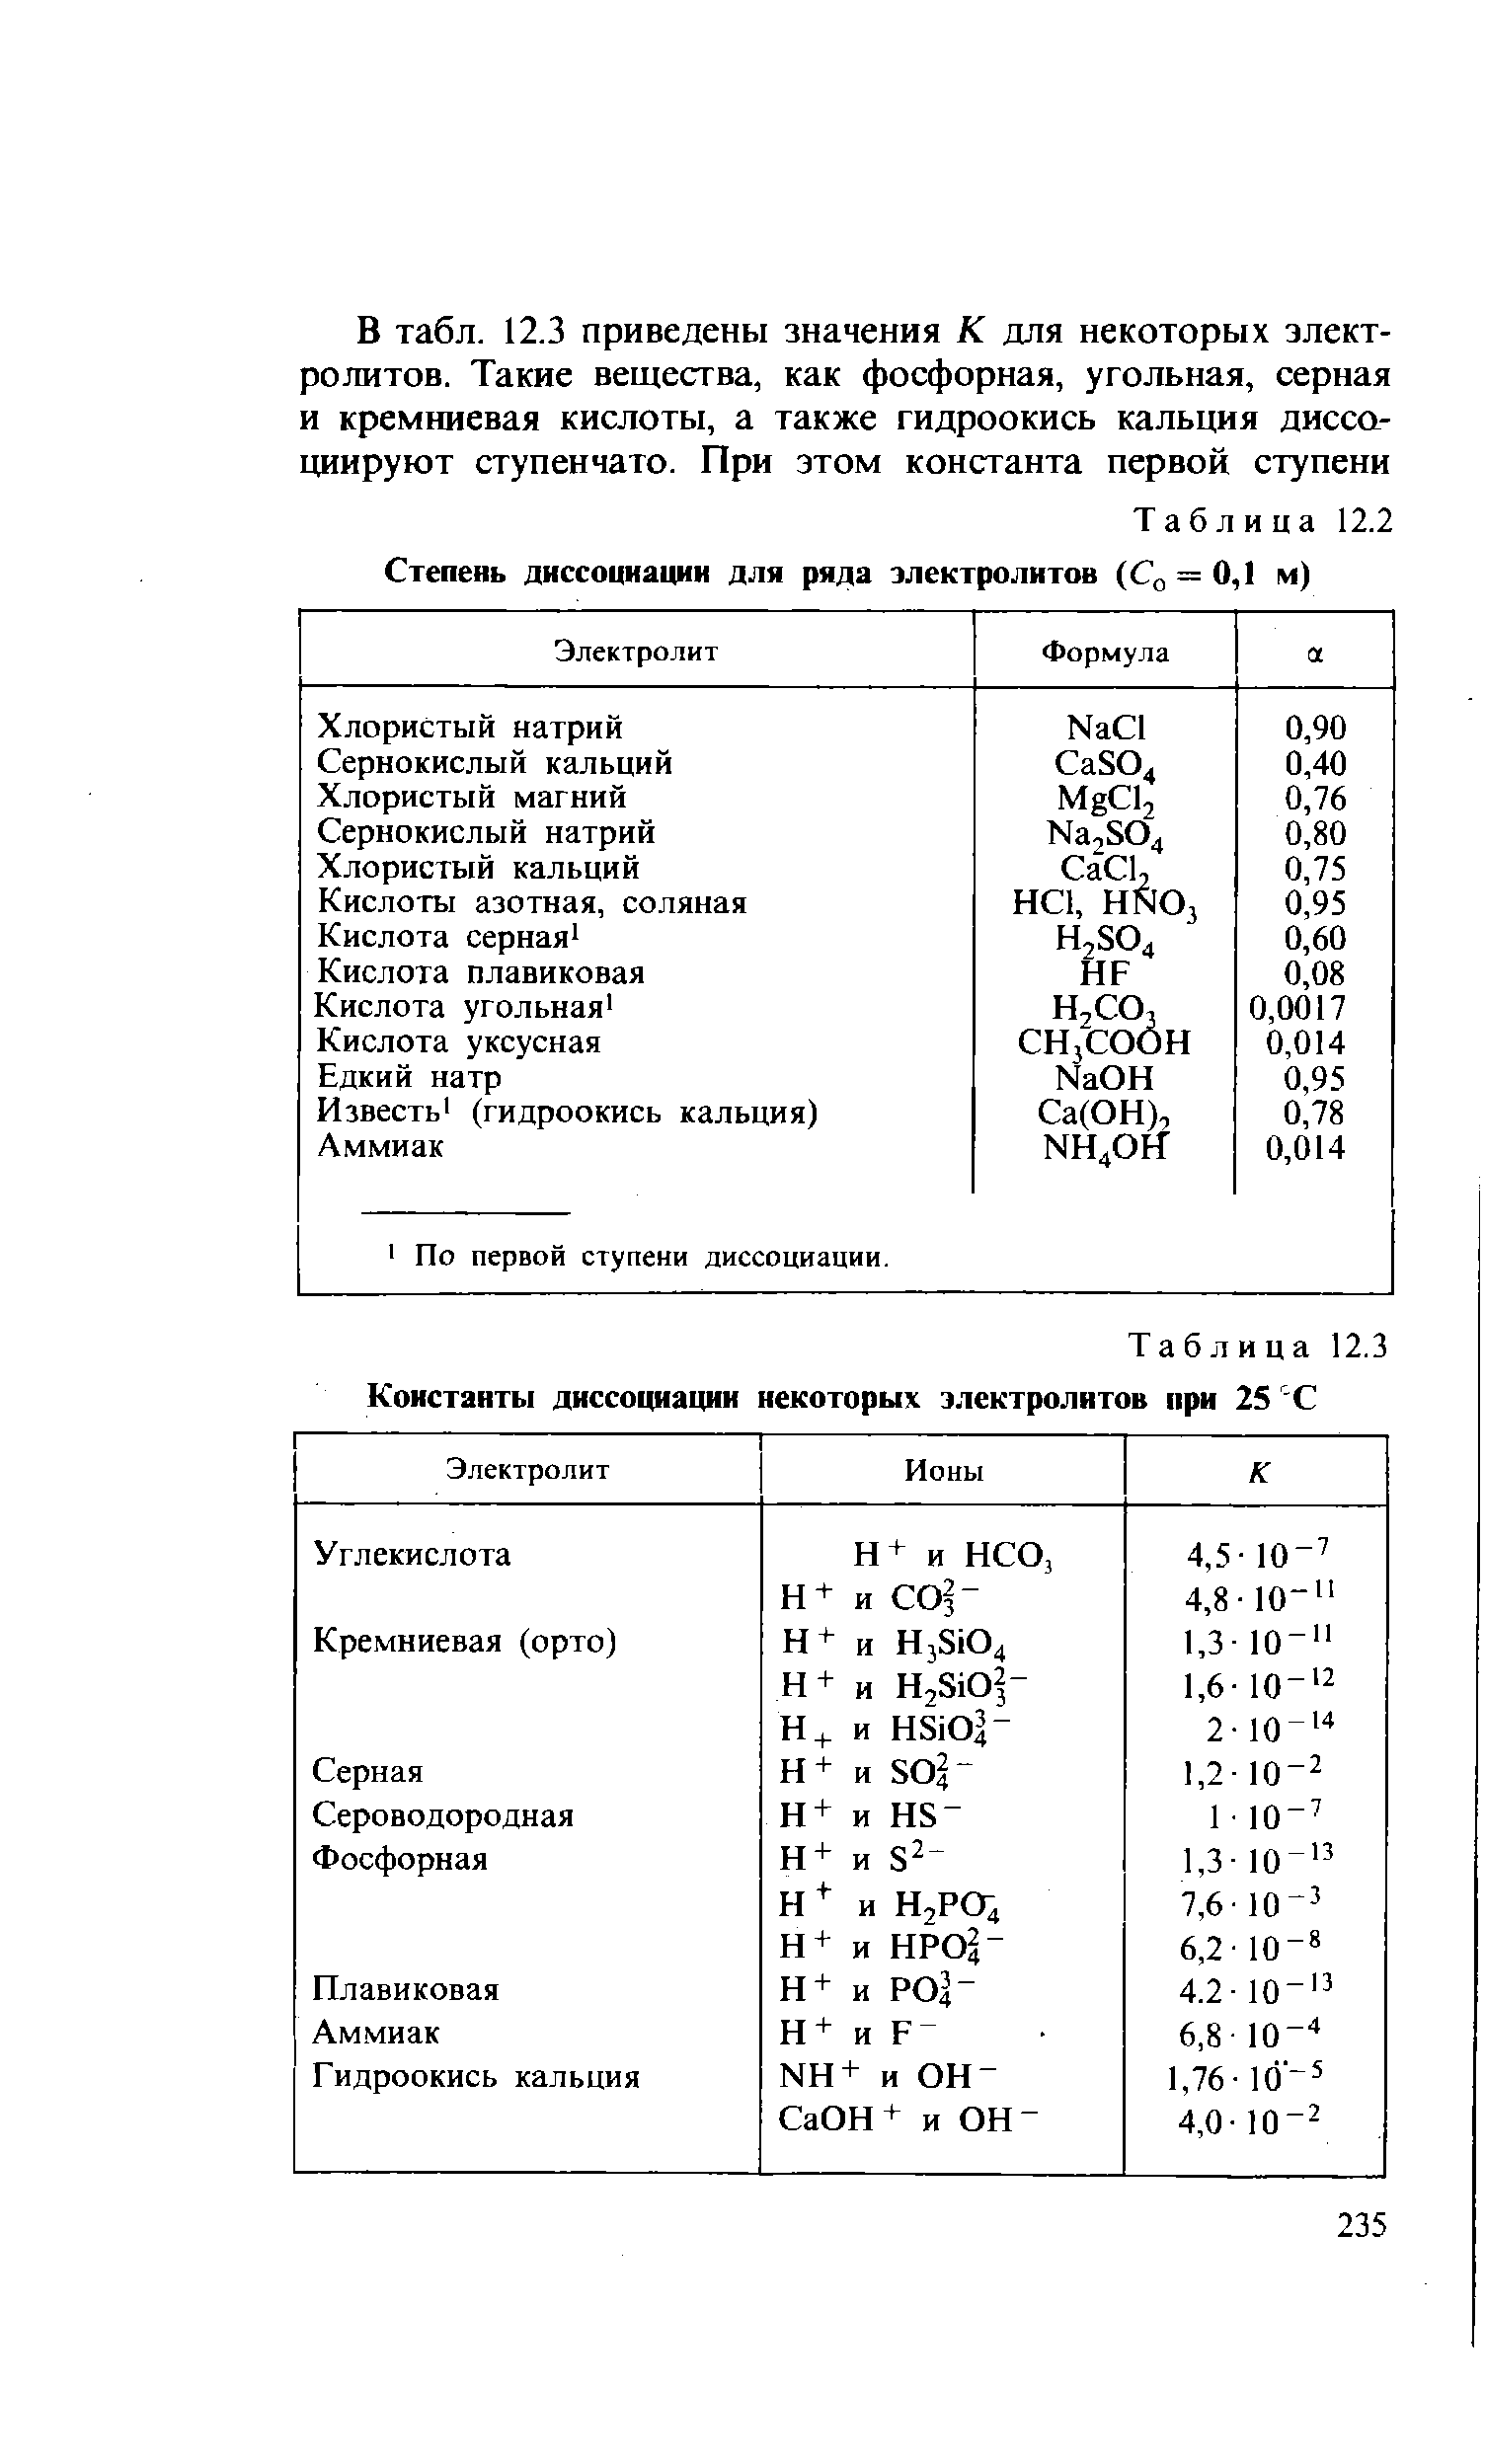 Таблица 12.3 Константы диссоциации некоторых электролитов при 25 С
